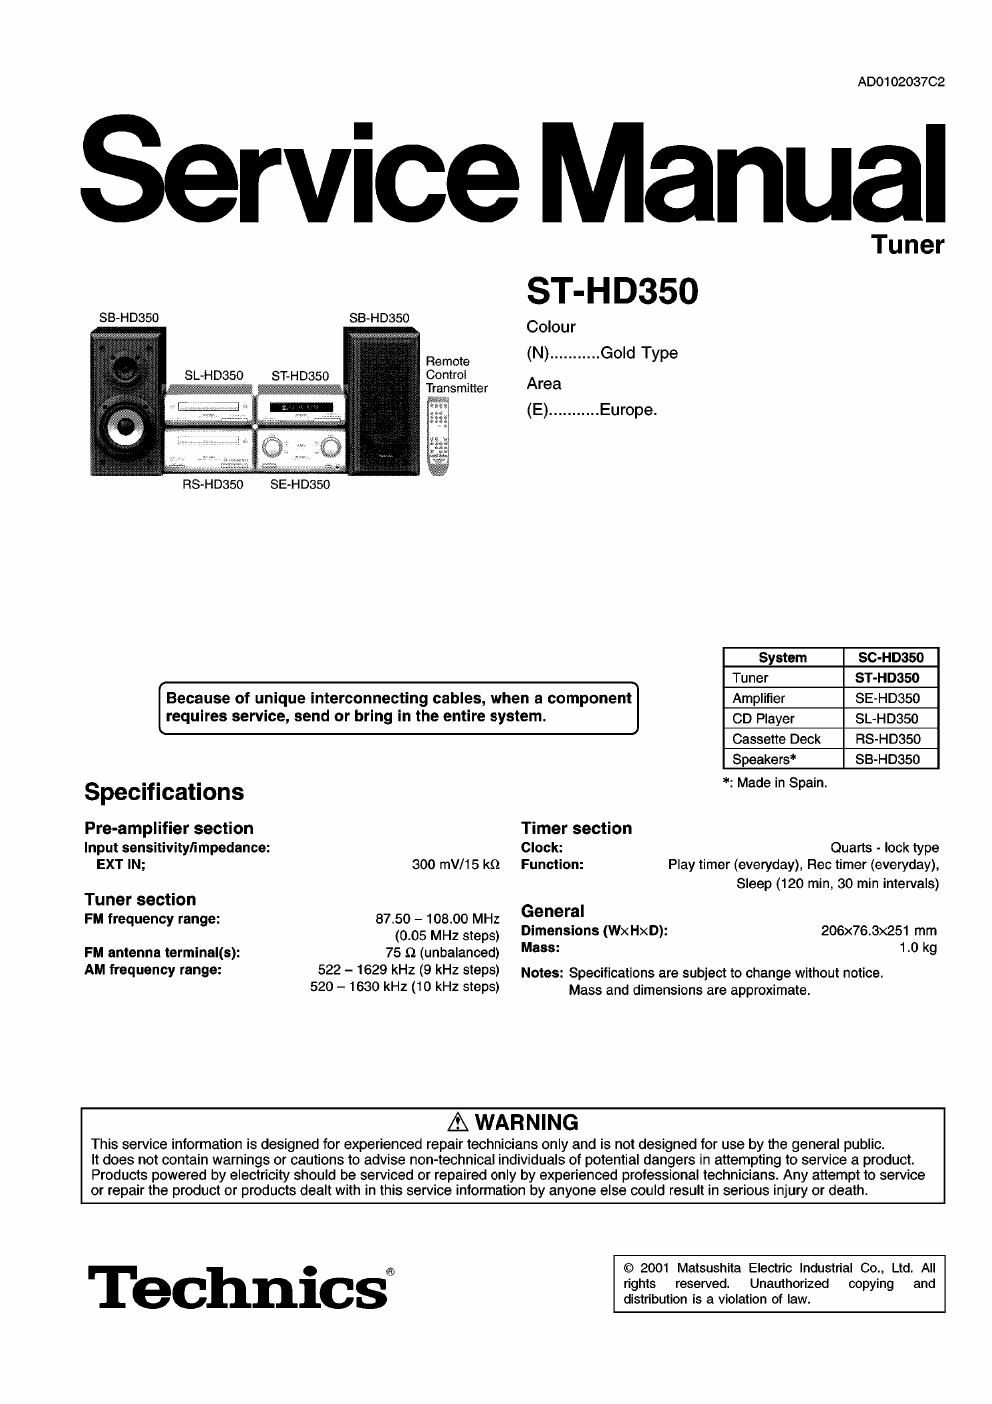 panasonic st hd 350 service manual